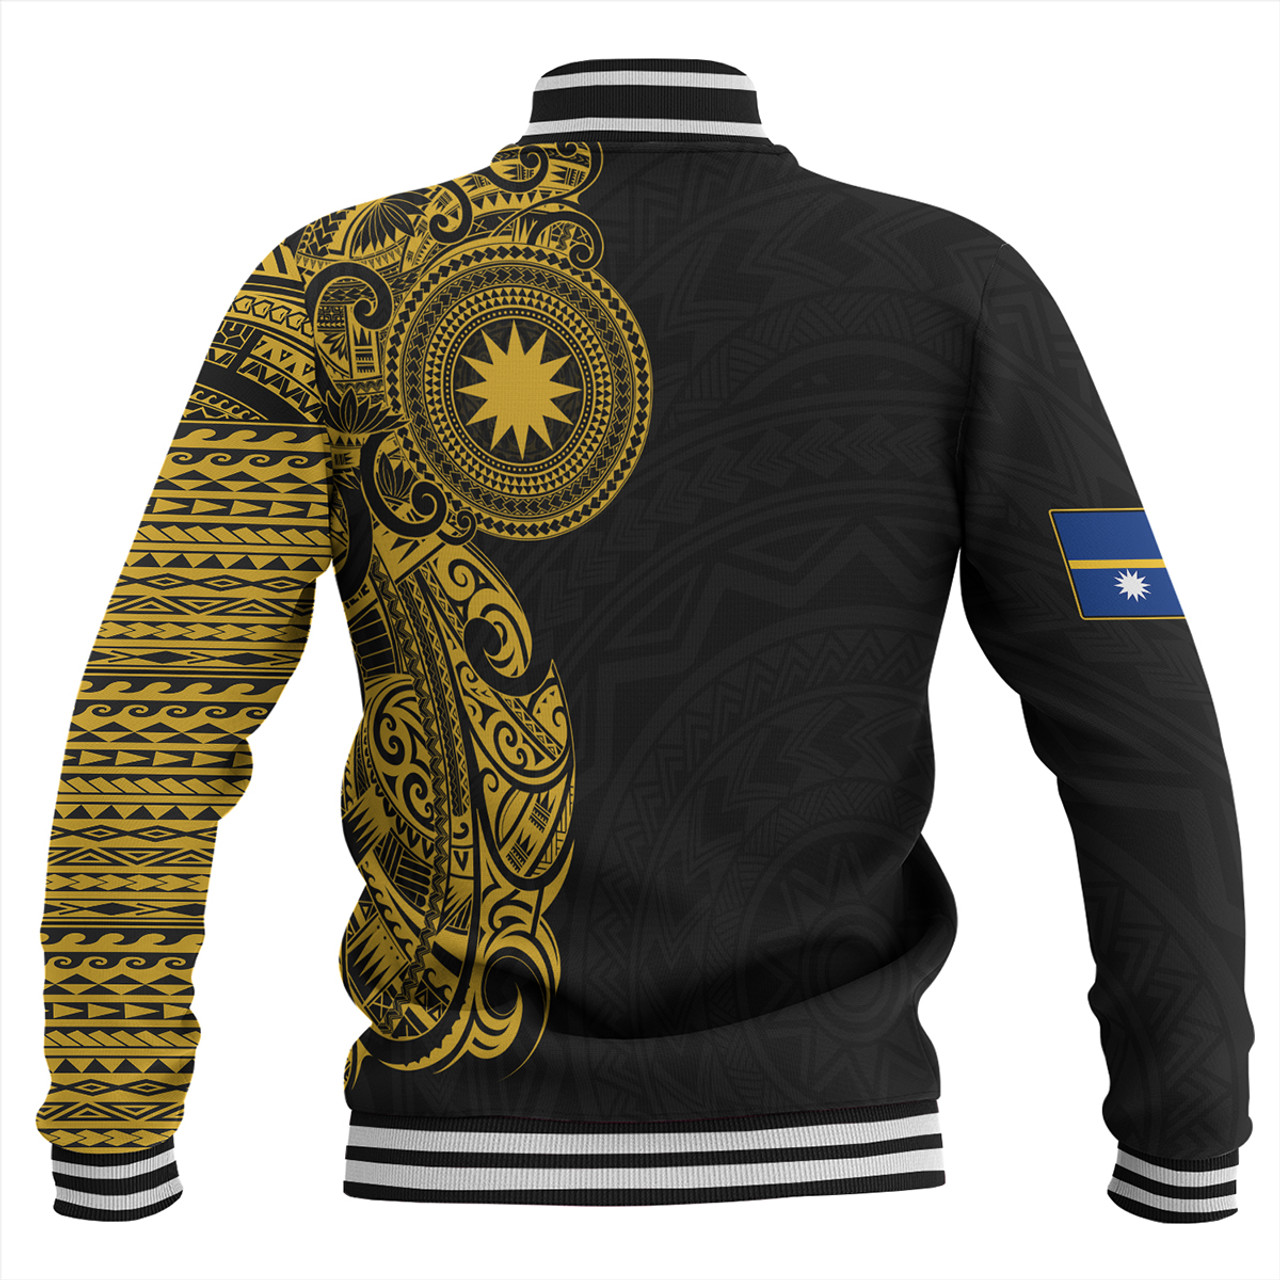 Nauru Baseball Jacket Custom Polynesian Half Sleeve Gold Tattoo With Seal Black